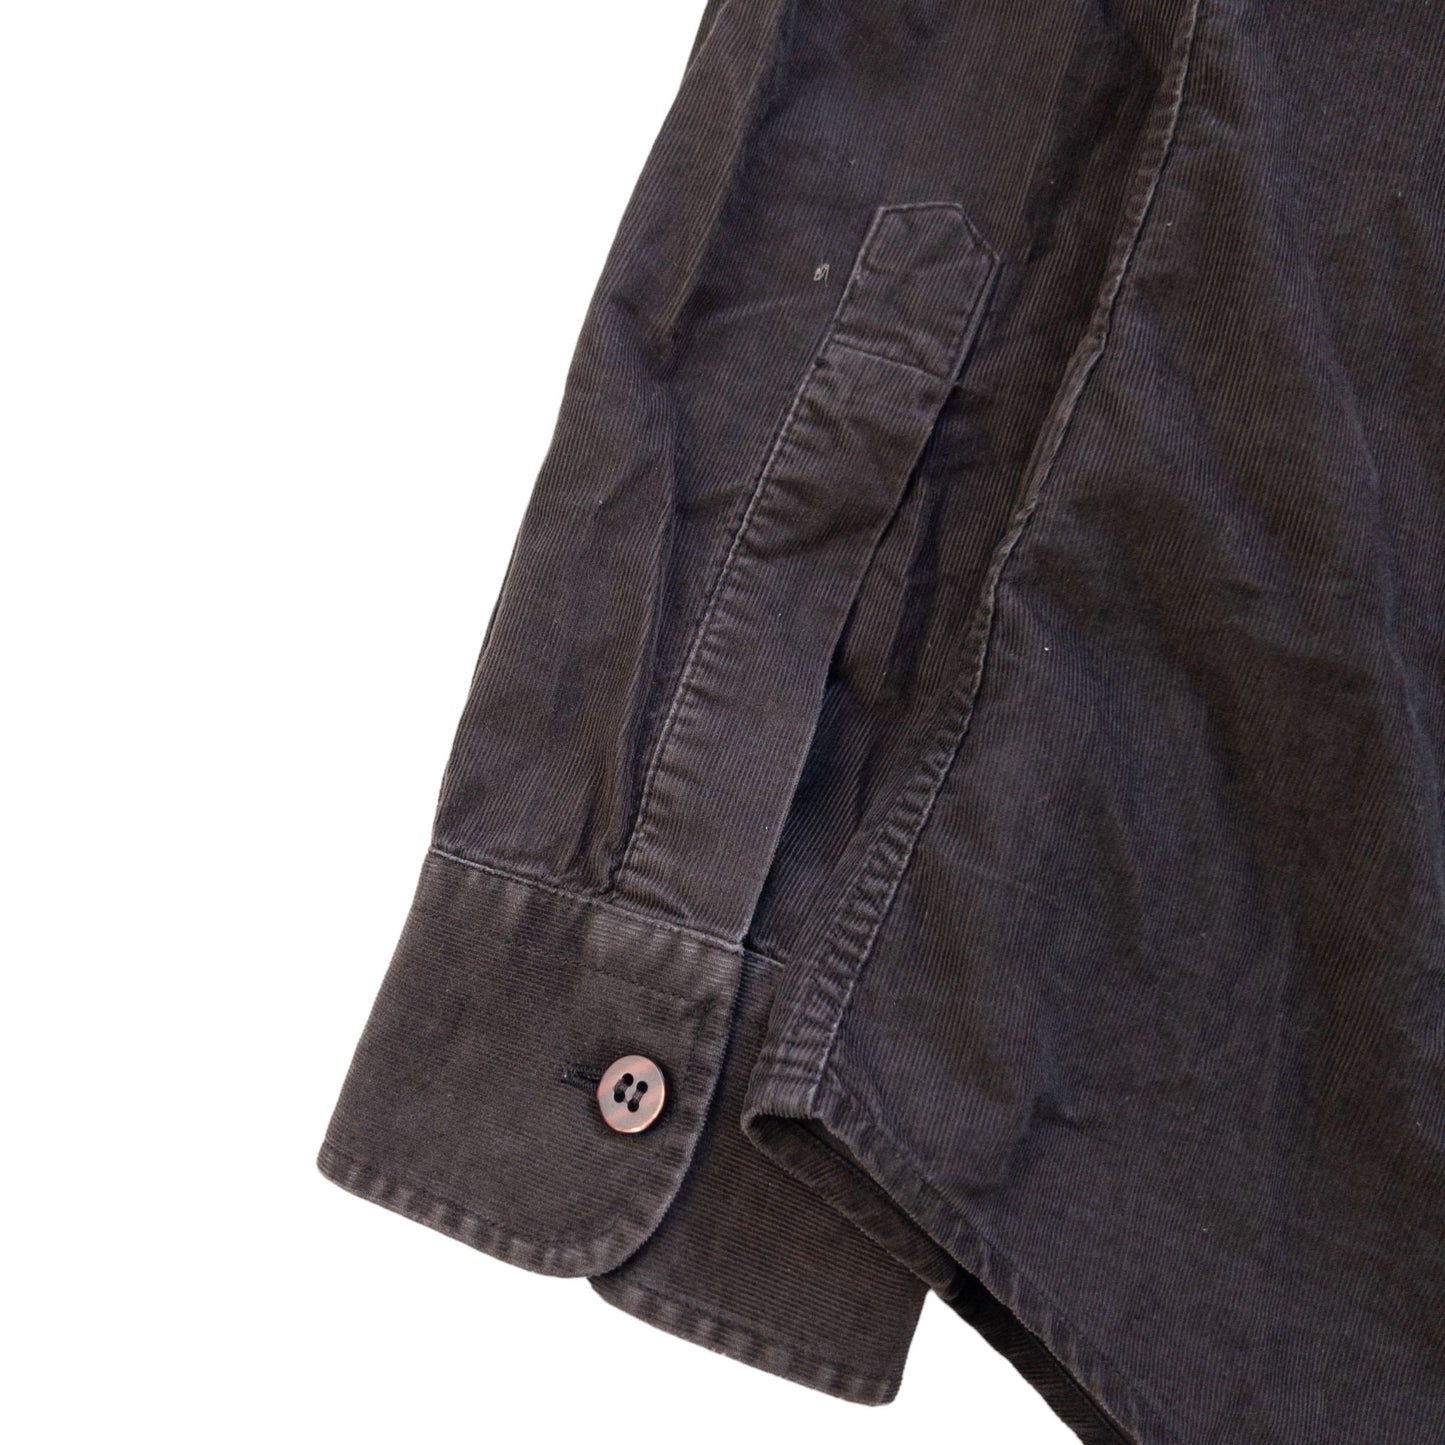 Vintage Armani Jeans Corduroy Button Up Shirt Size L